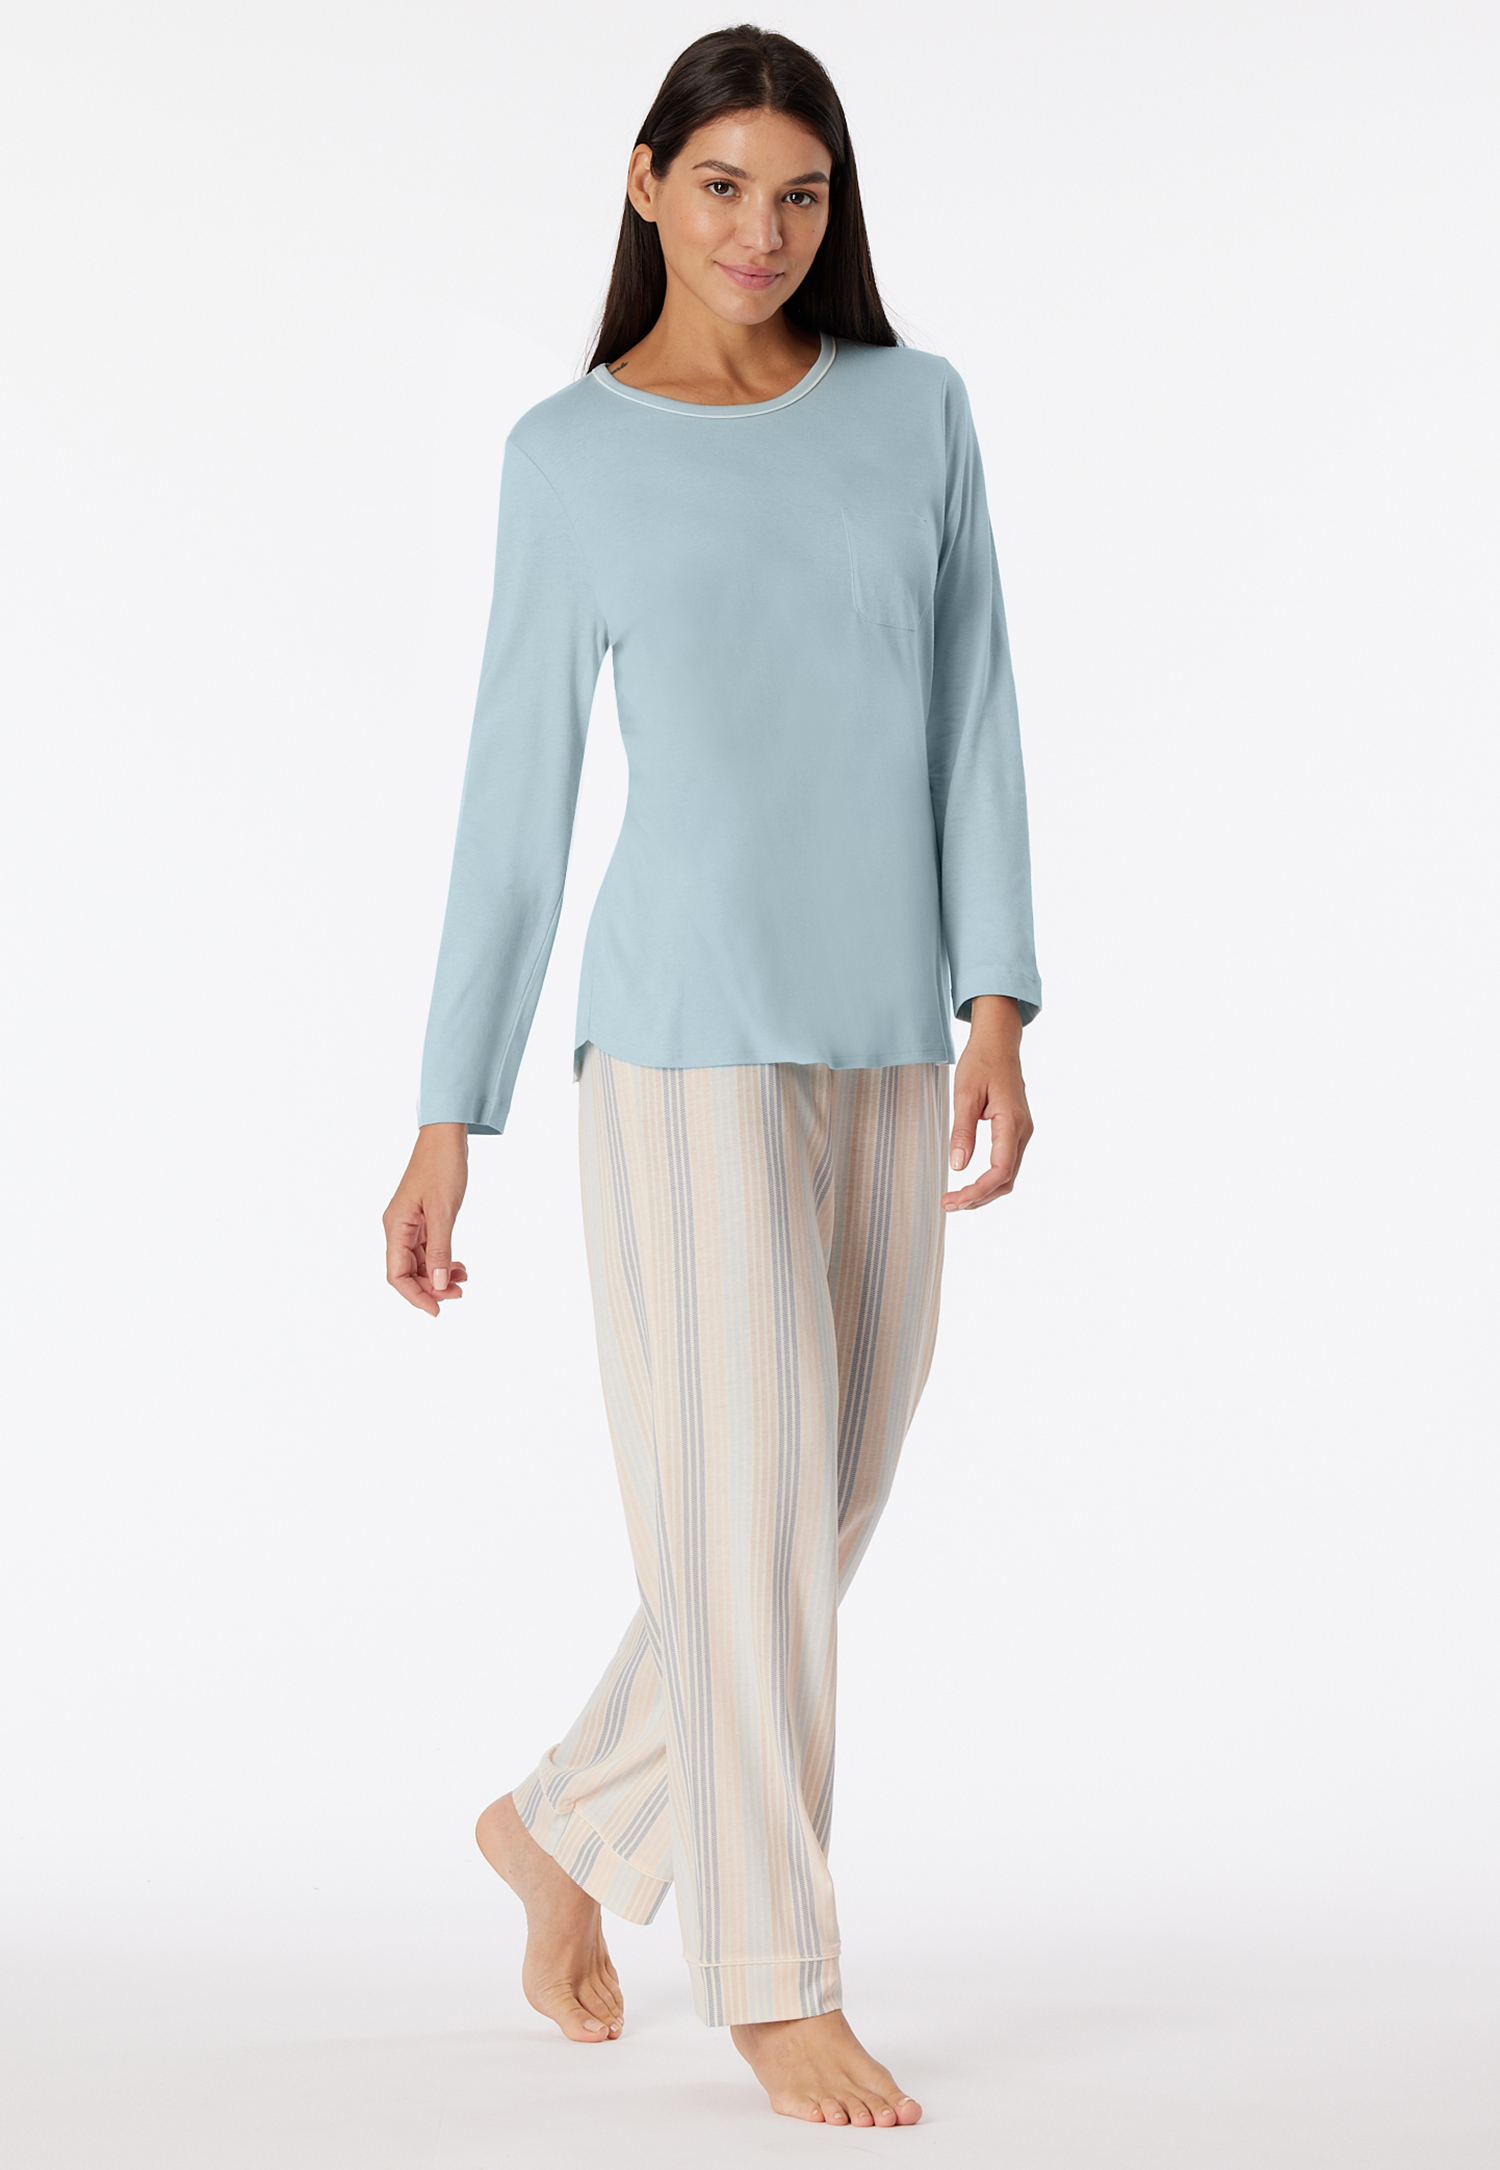 Schlafanzug lang bluebird - Comfort Nightwear 36 von Schiesser